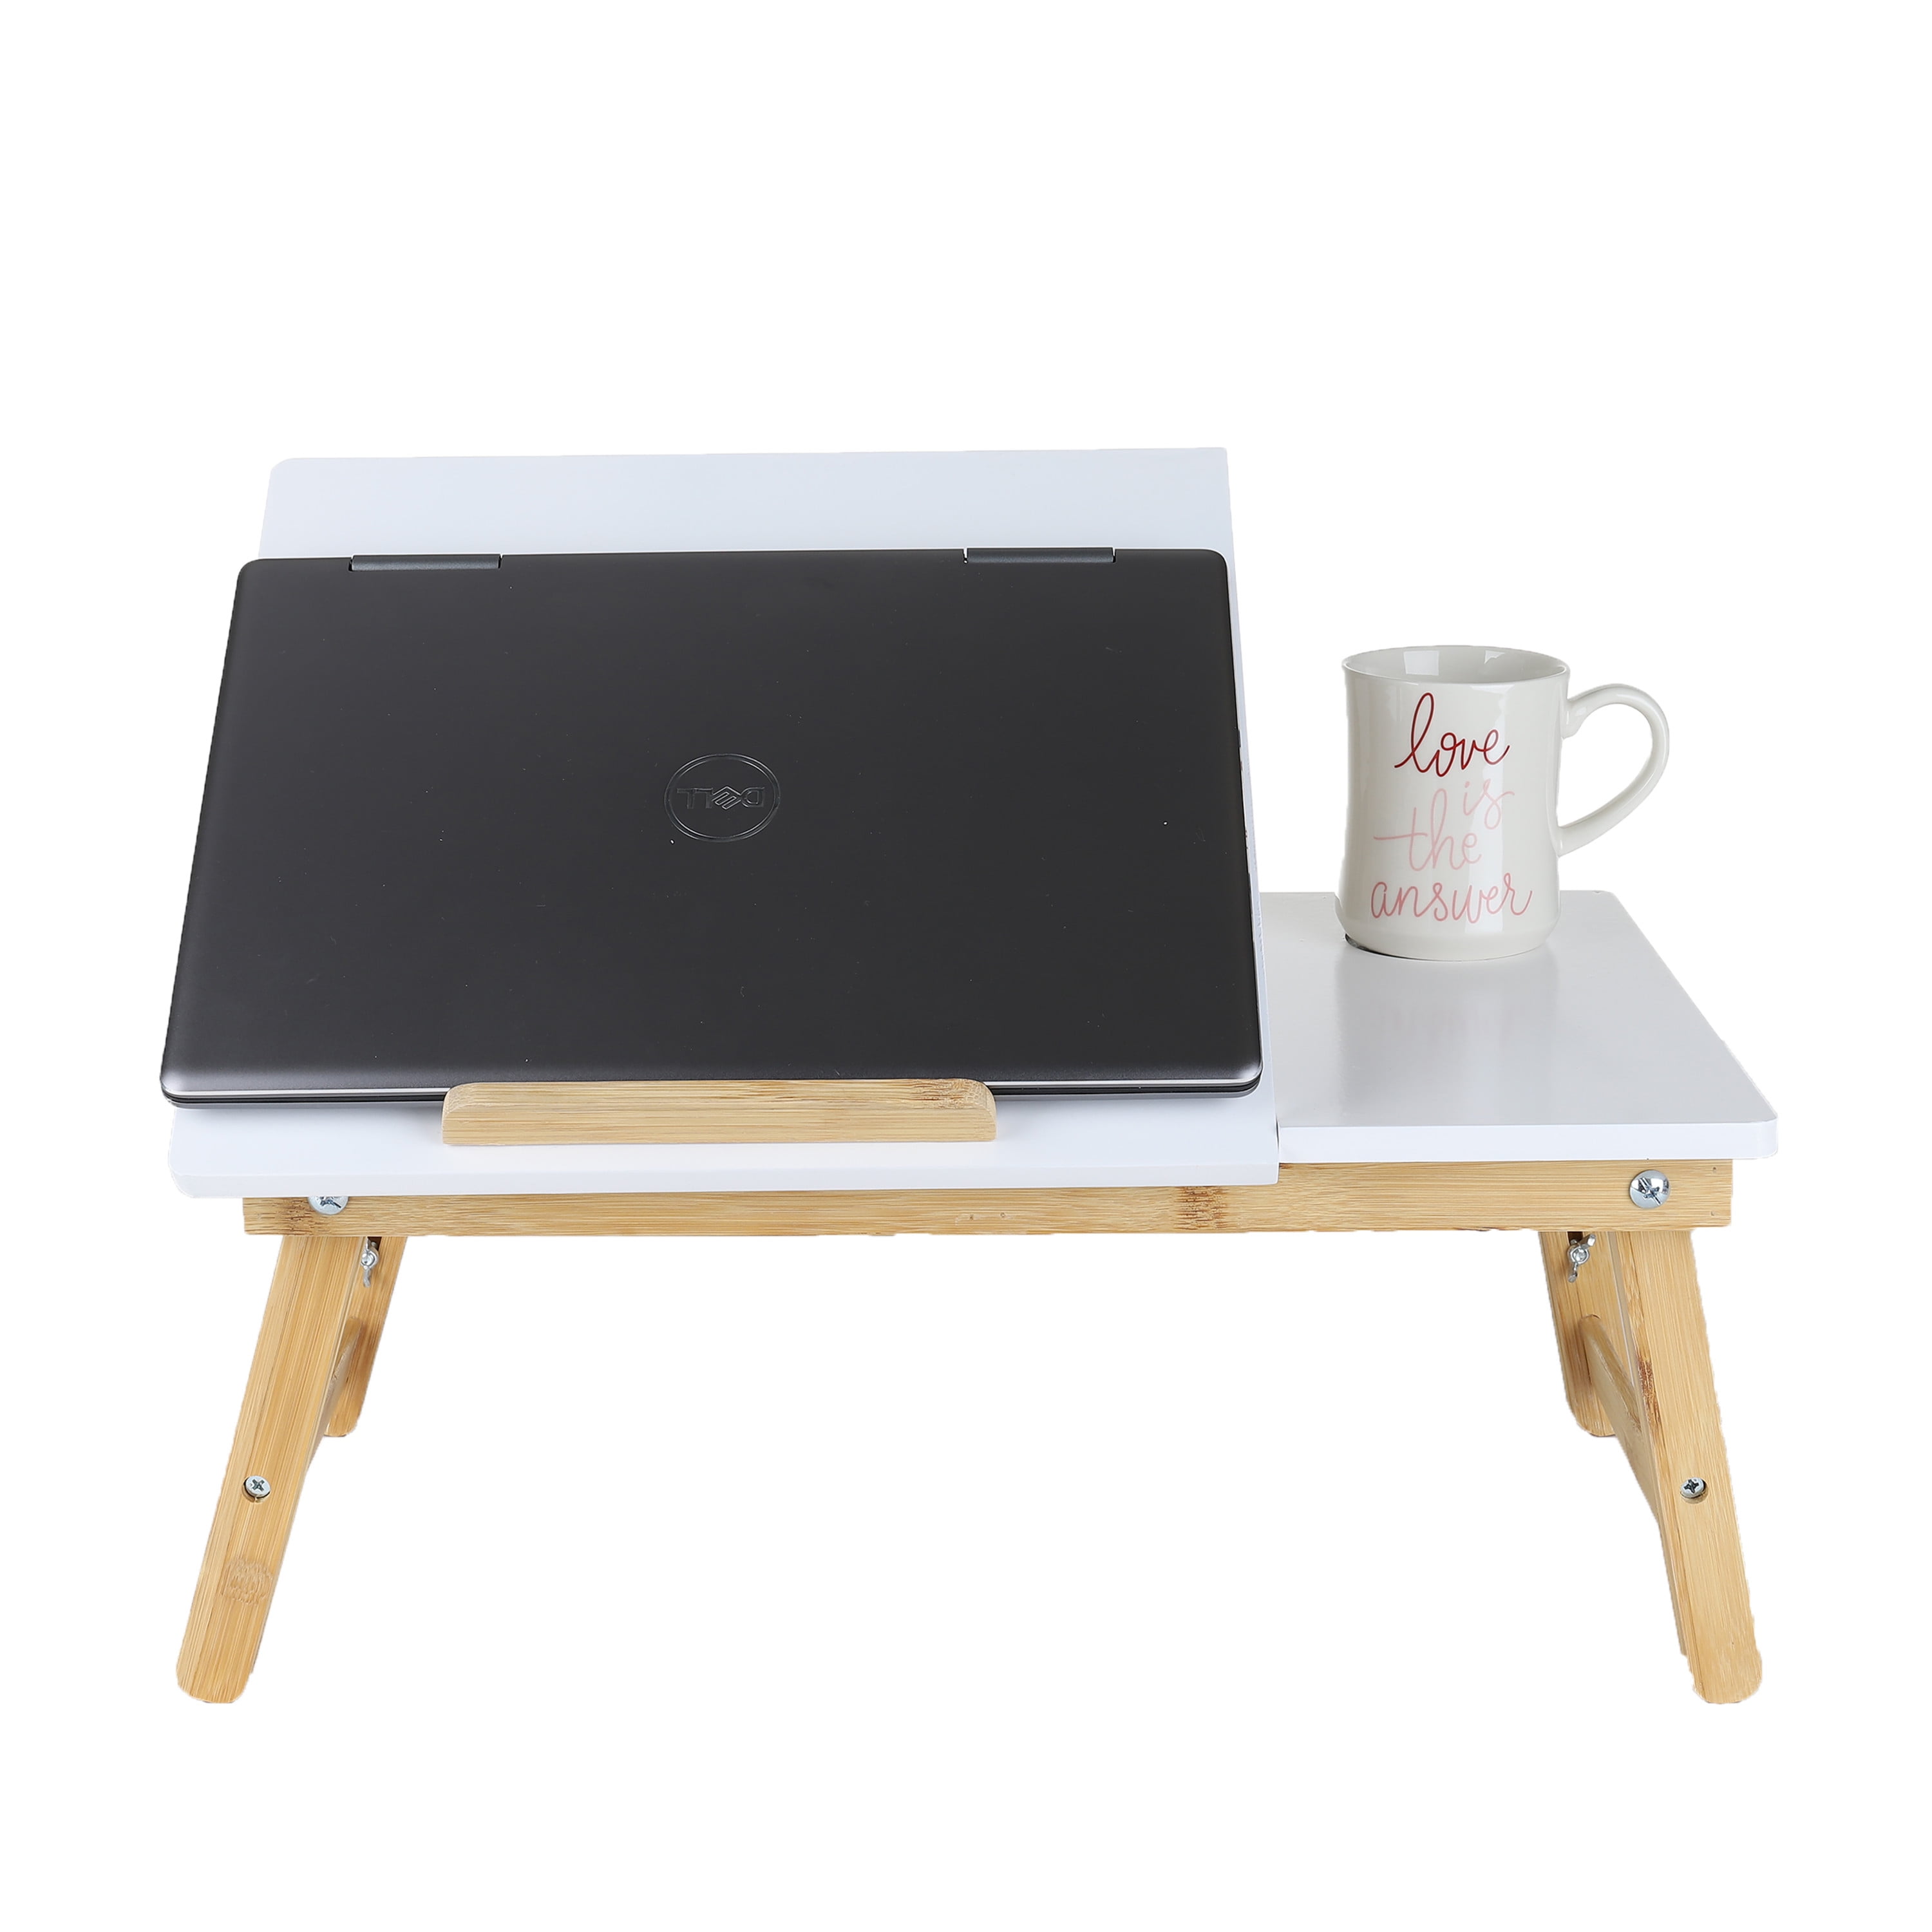 Laptop Desk Bed Black Cool Tray Mind Reader Coolpad Flip Top Adjustable 